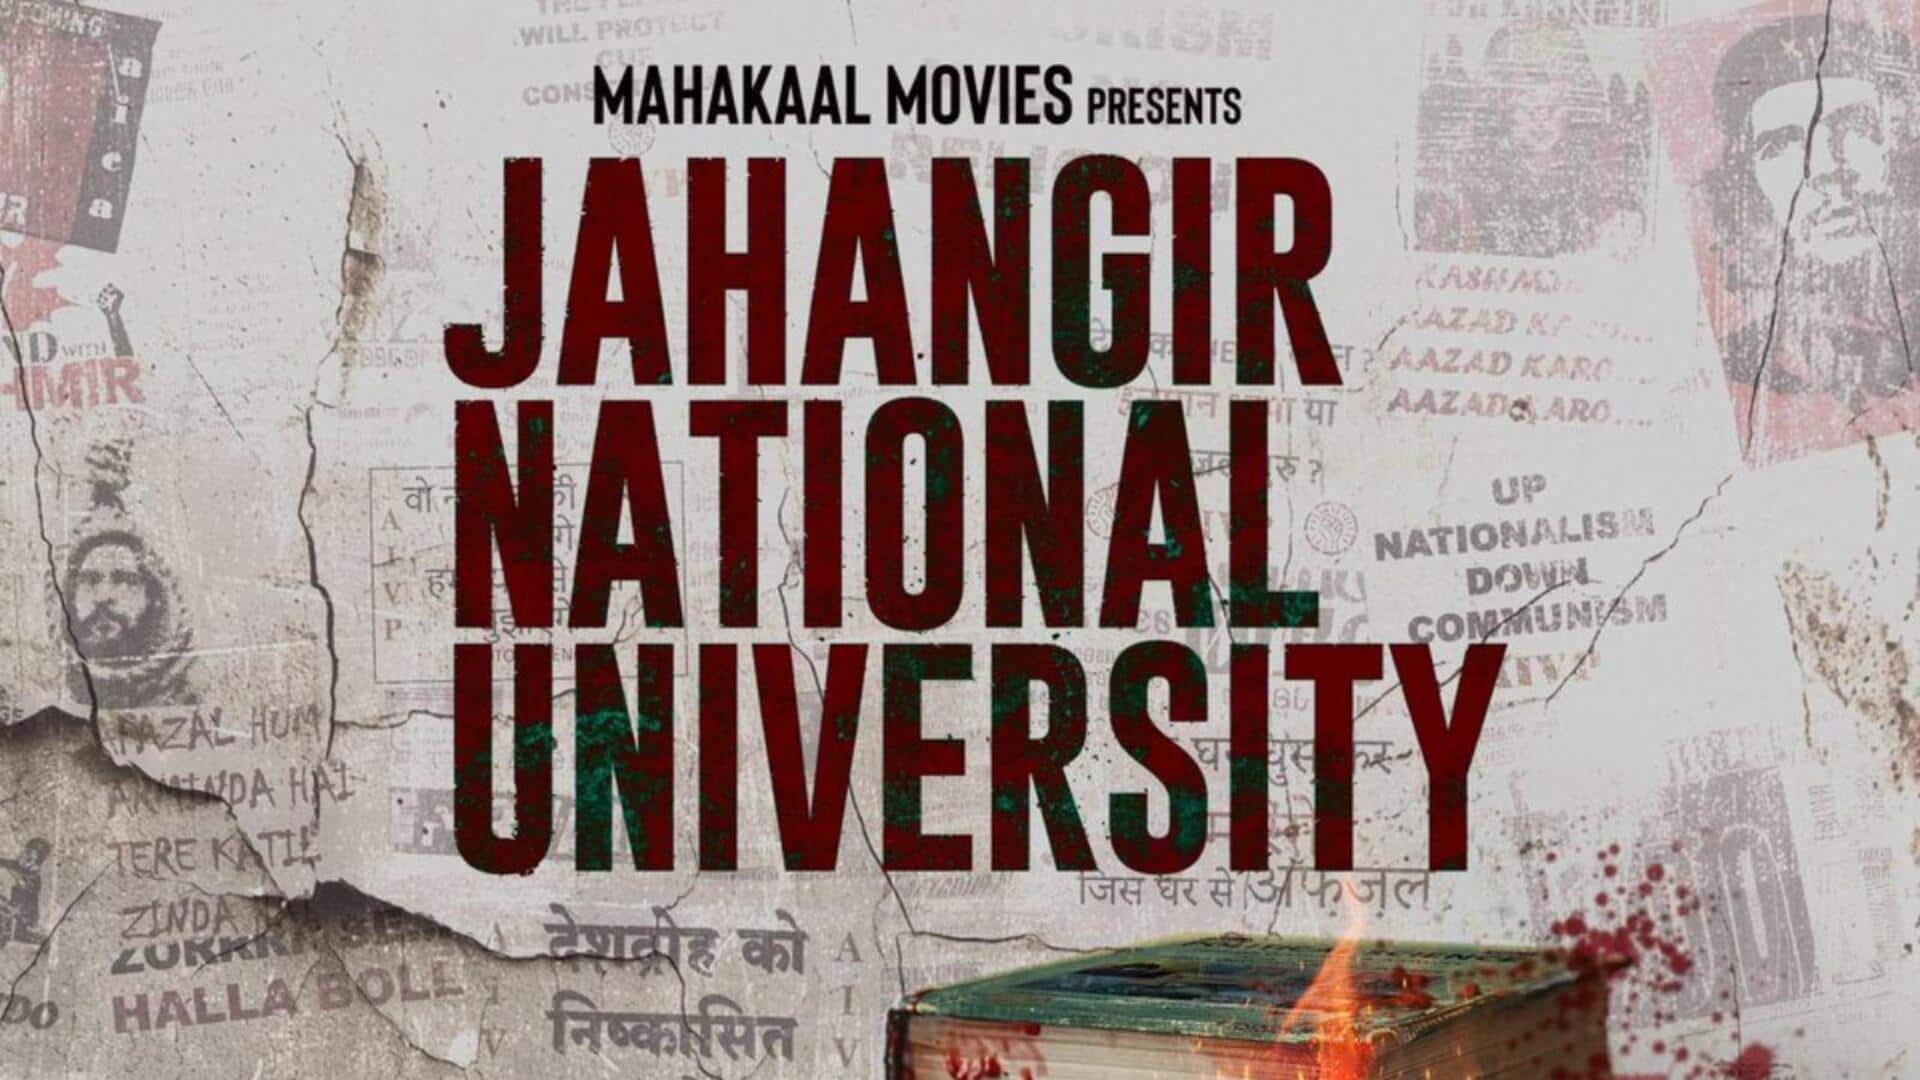 उर्वशी रौतेला और रवि किशन की फिल्म 'JNU' को मिली नई रिलीज तारीख, पोस्टर भी जारी 